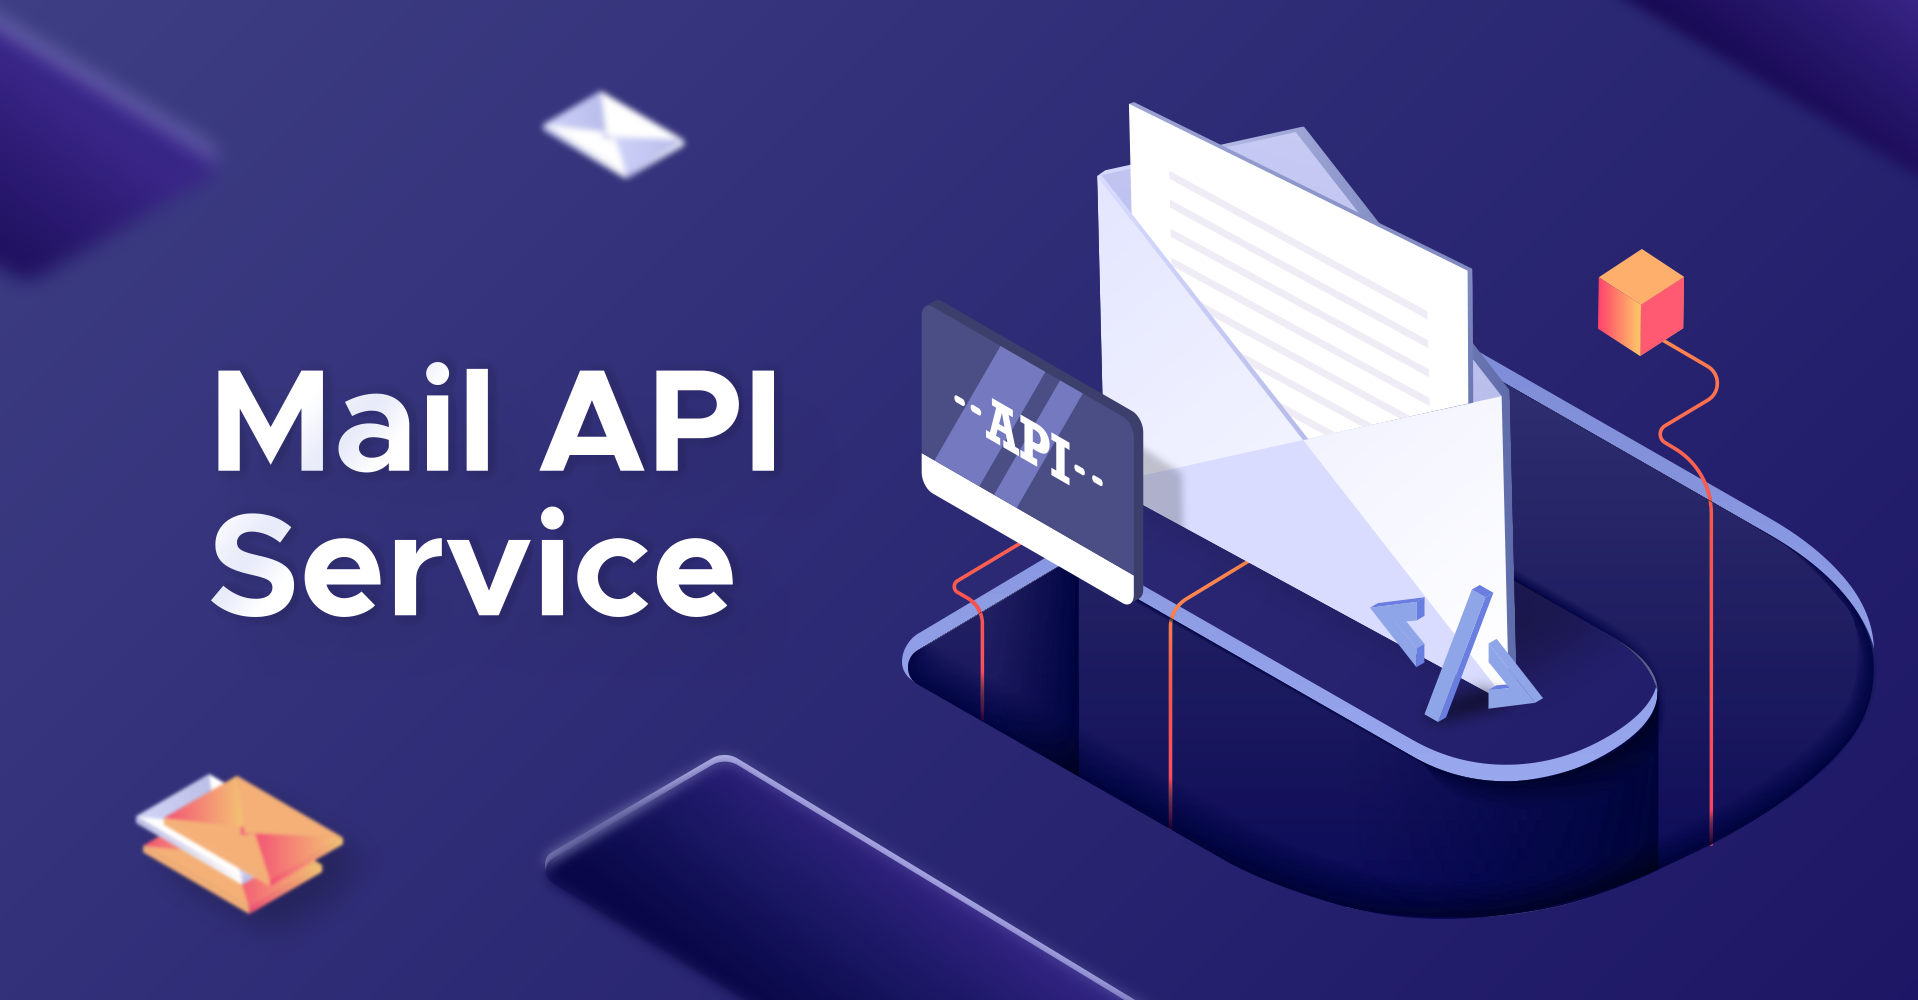 Mail API Service